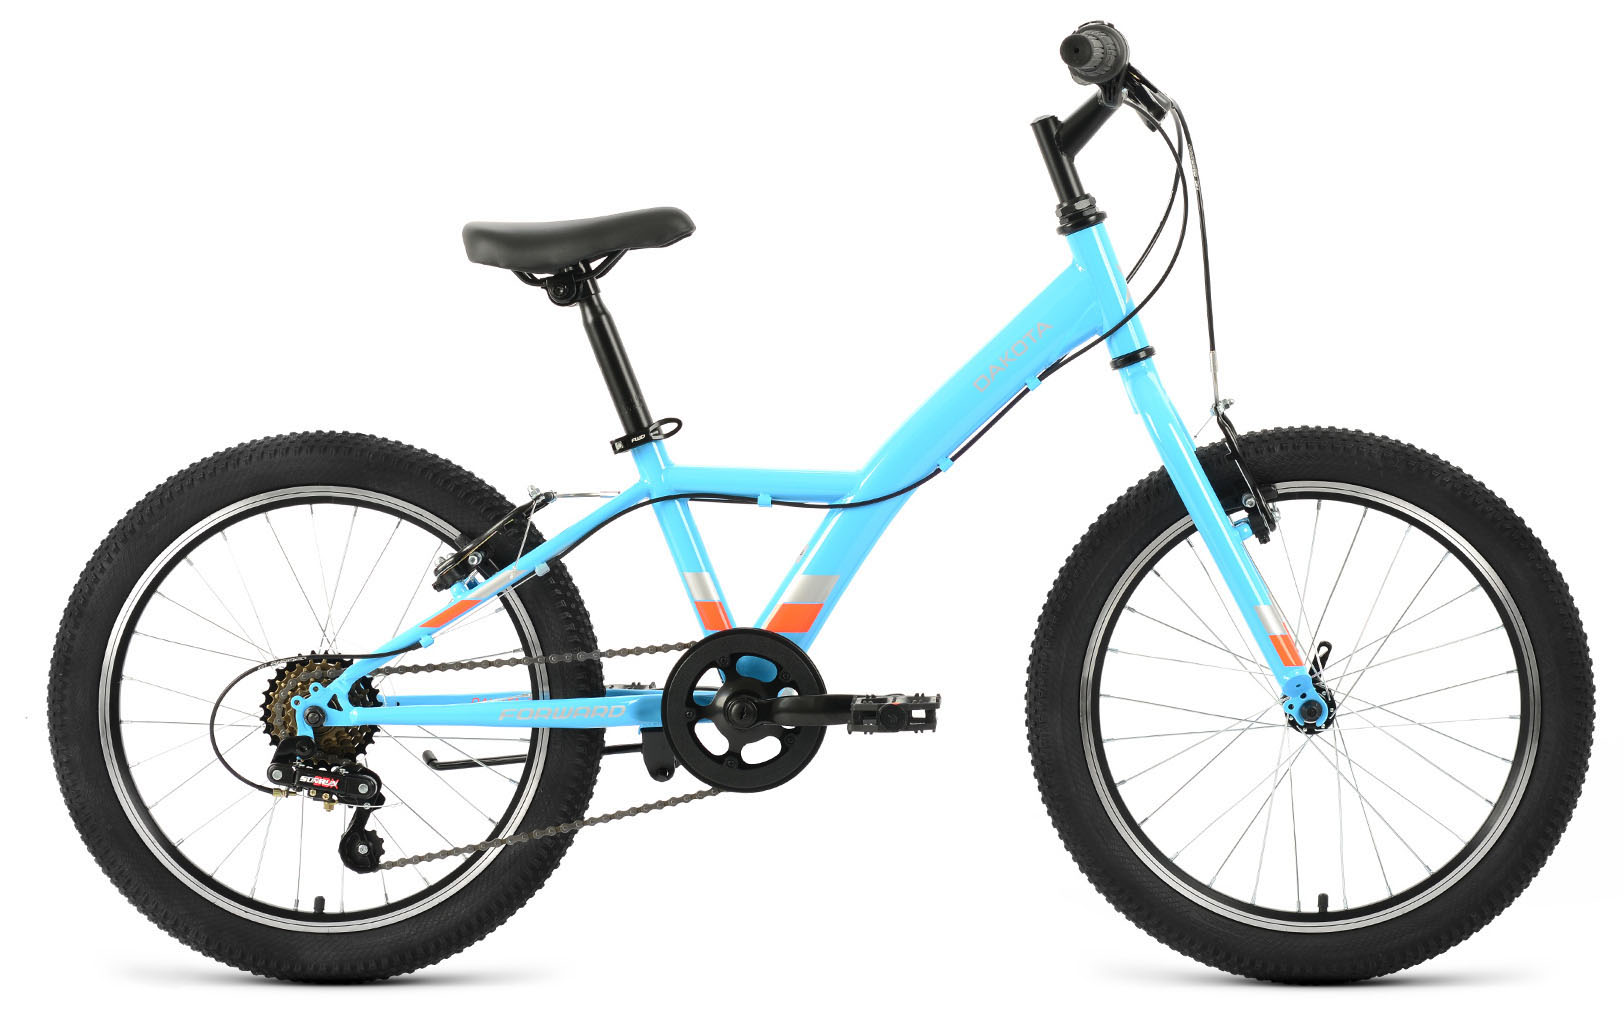  Велосипед Forward Dakota 20 1.0 2020